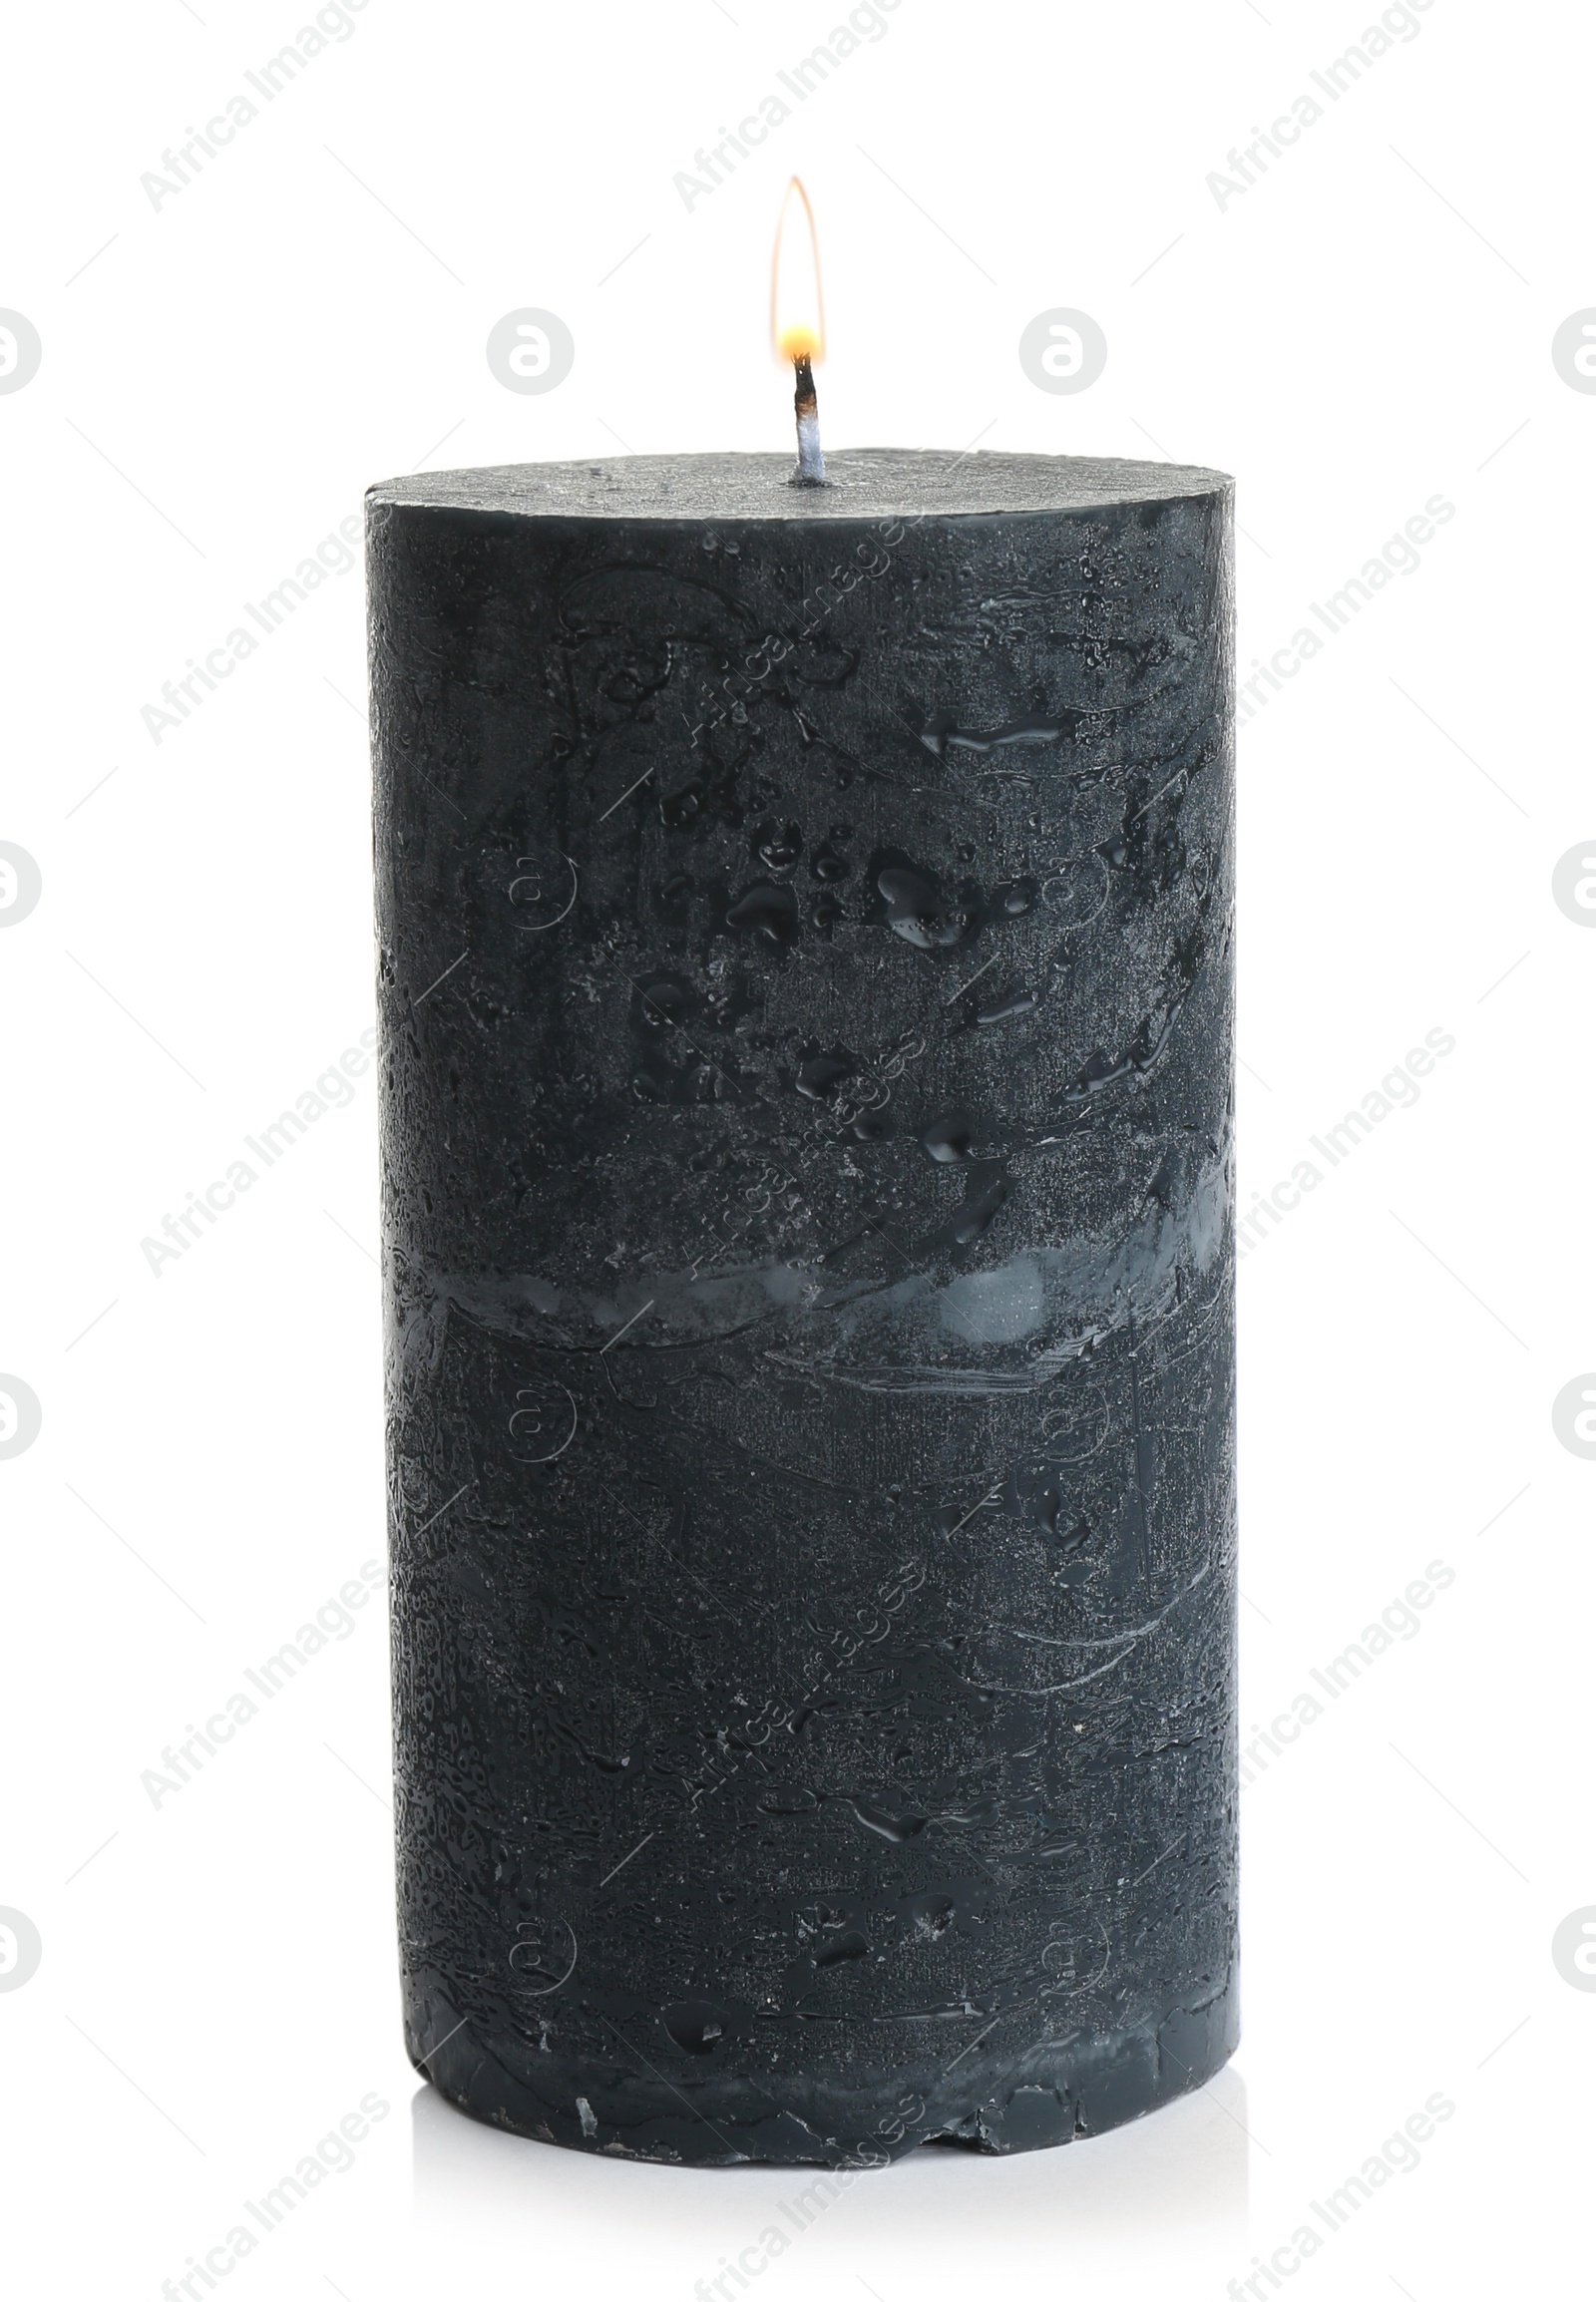 Photo of Dark burning decorative candle isolated on white